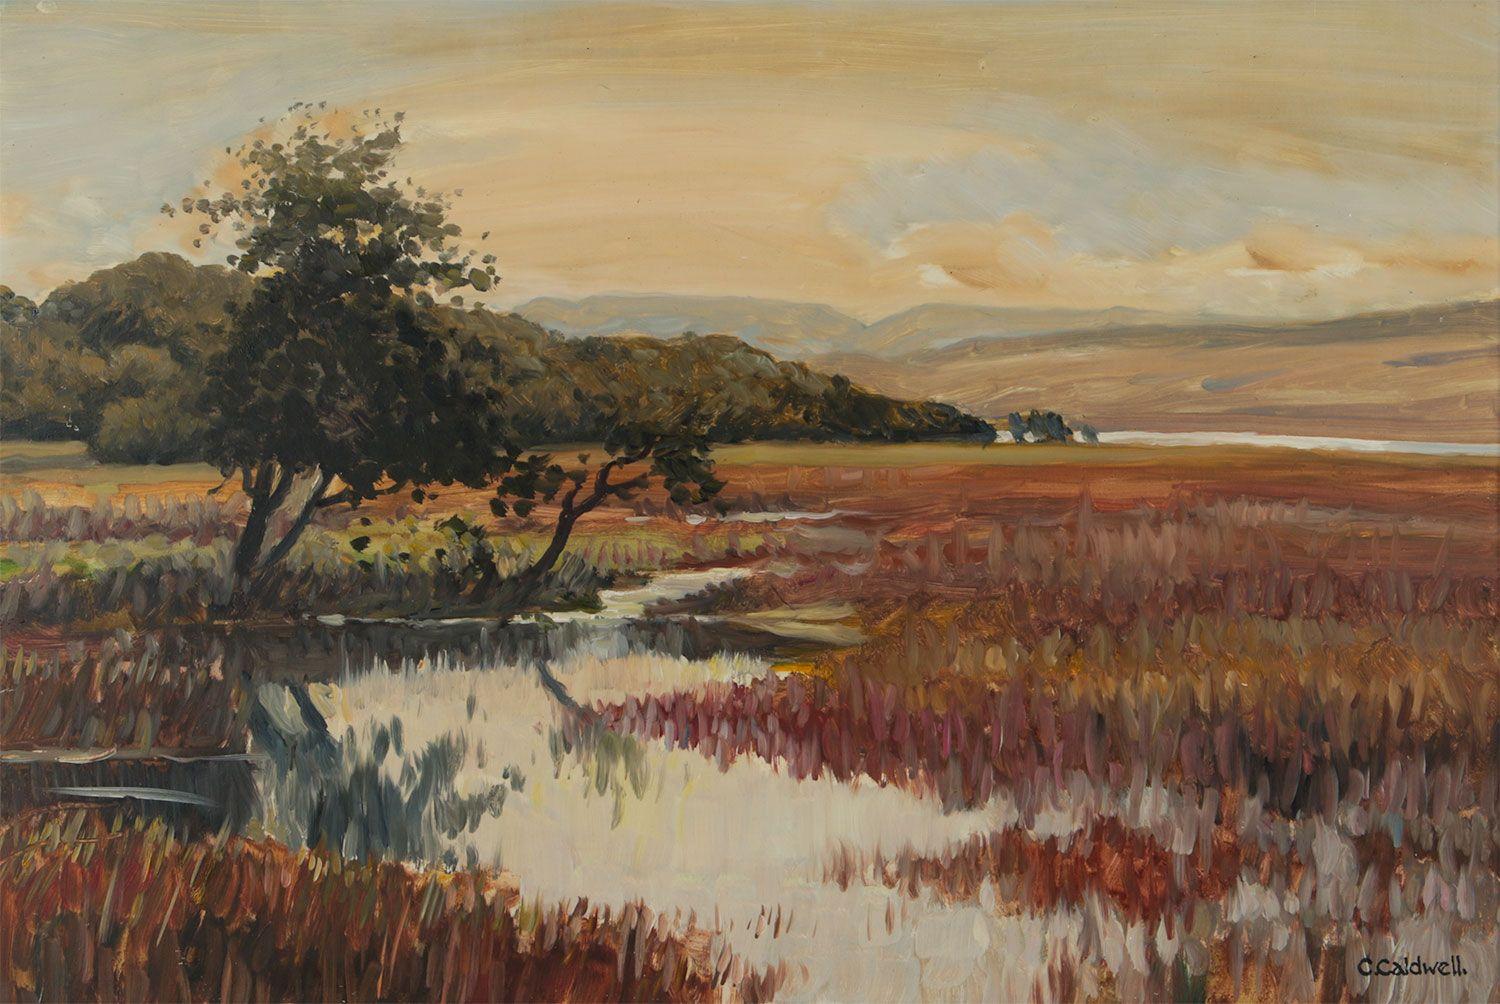 Postimpressionistisches Ölgemälde einer Donegal-Wüstenlandschaft in Irland  – Painting von Charles McNeill Caldwell